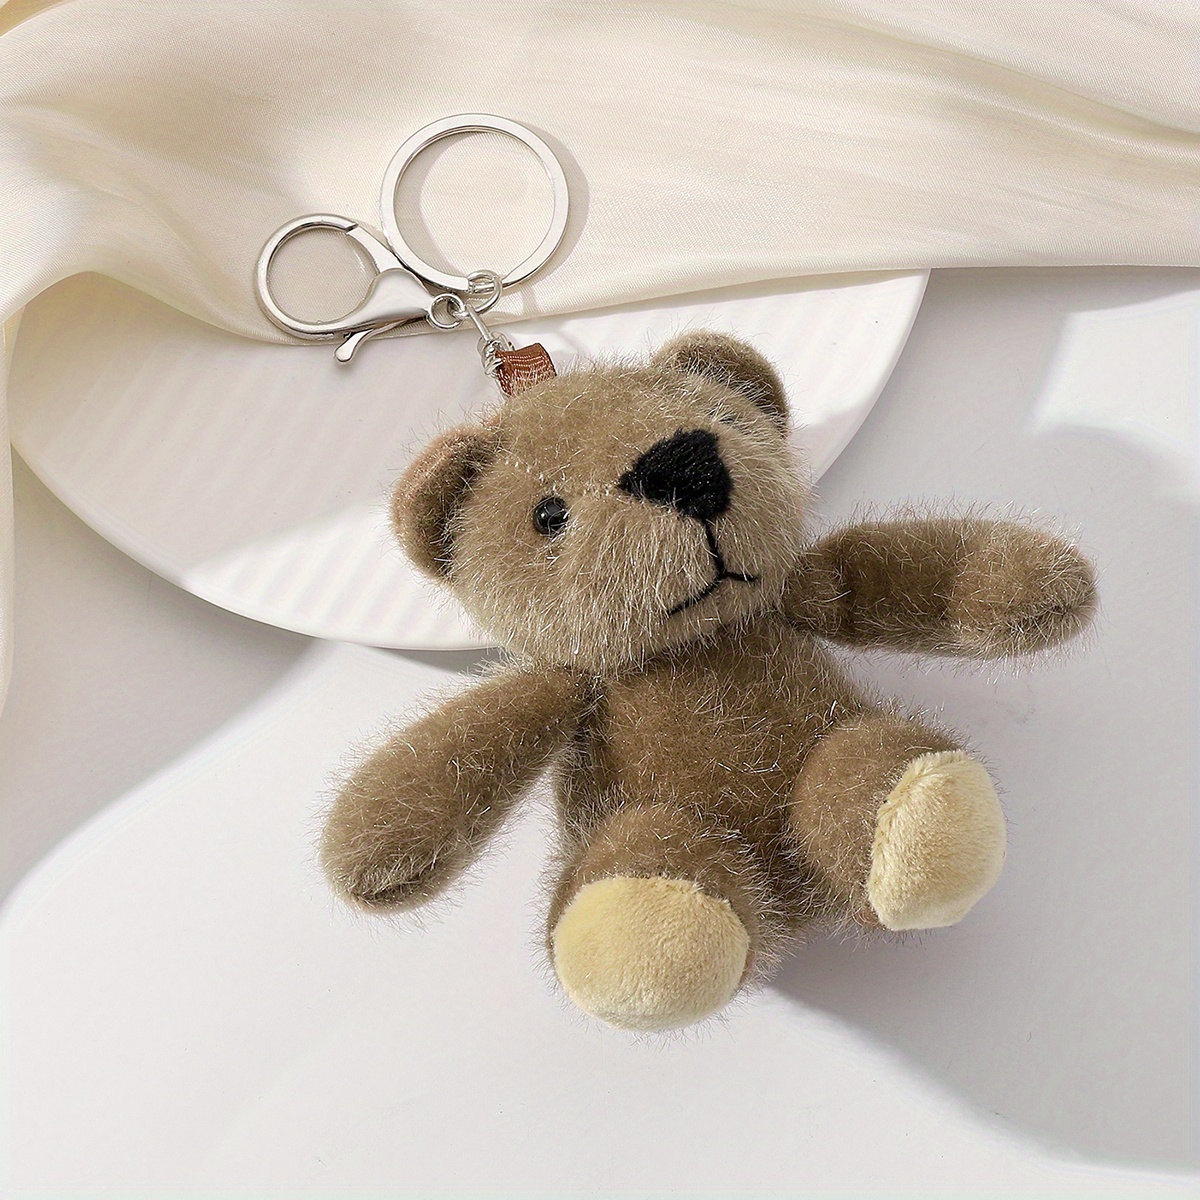 Keyring with teddy bear coin purse